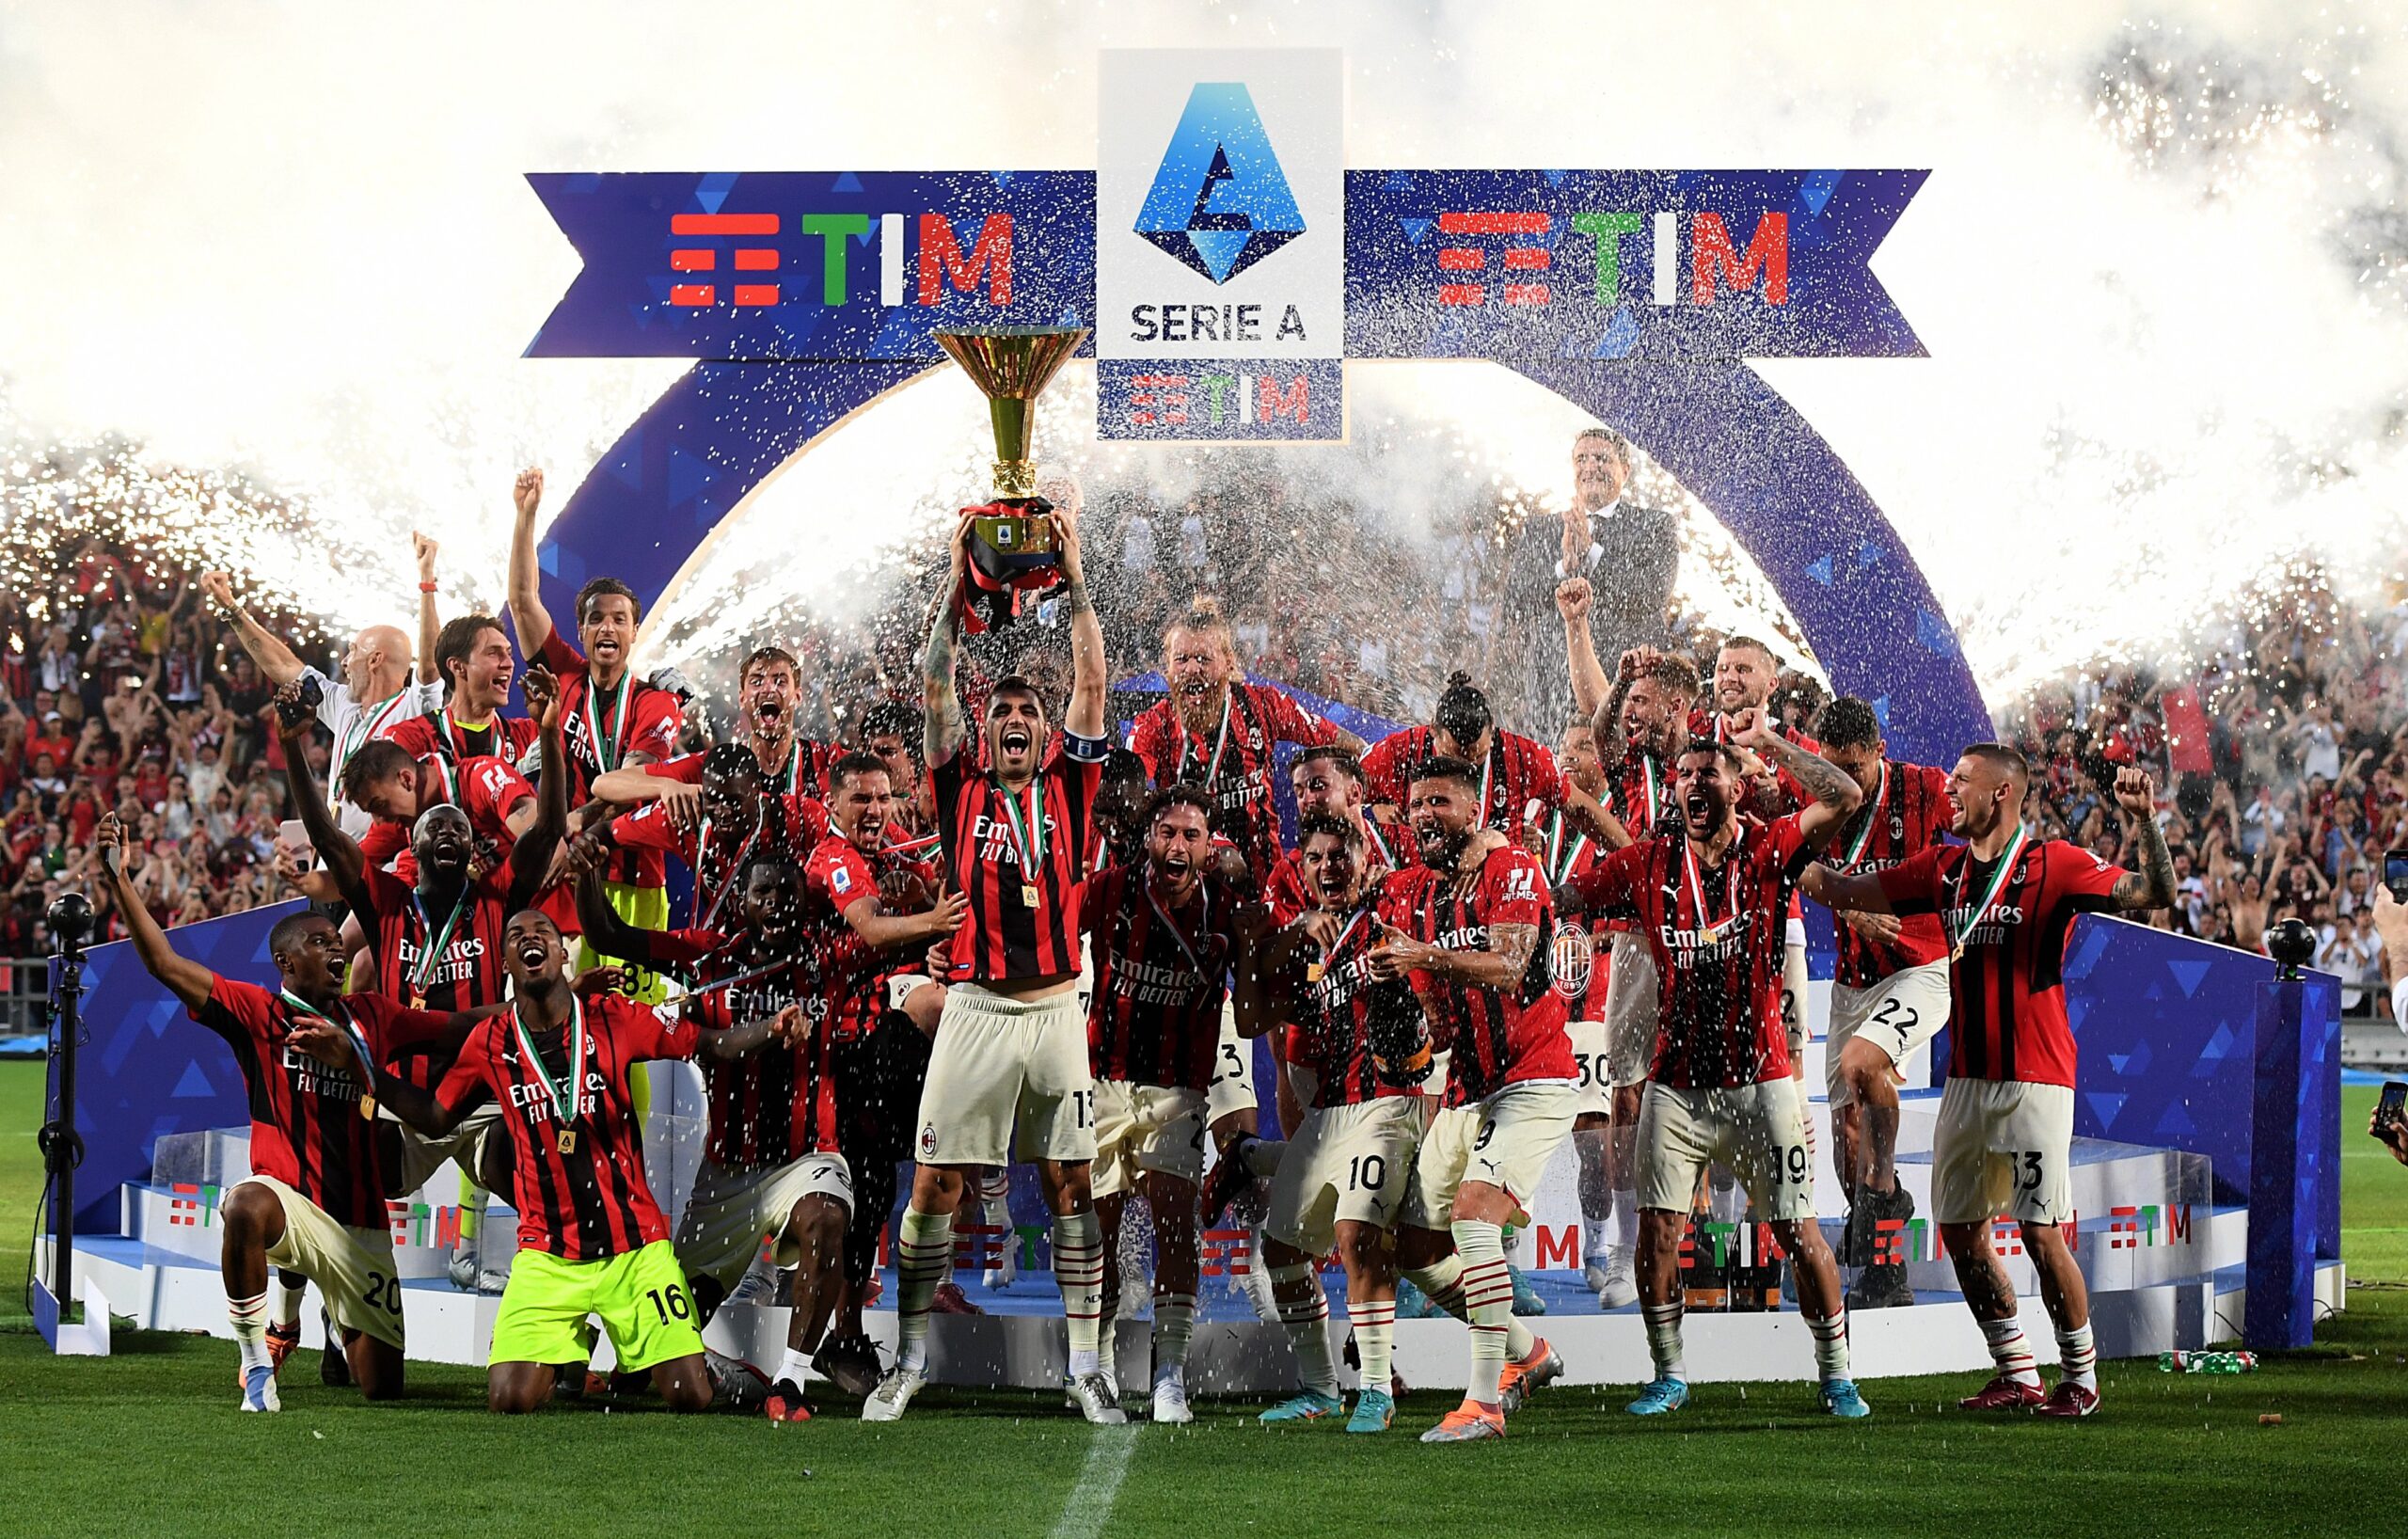 Серия А грейна в червено и черно - Милан е шампион! 1